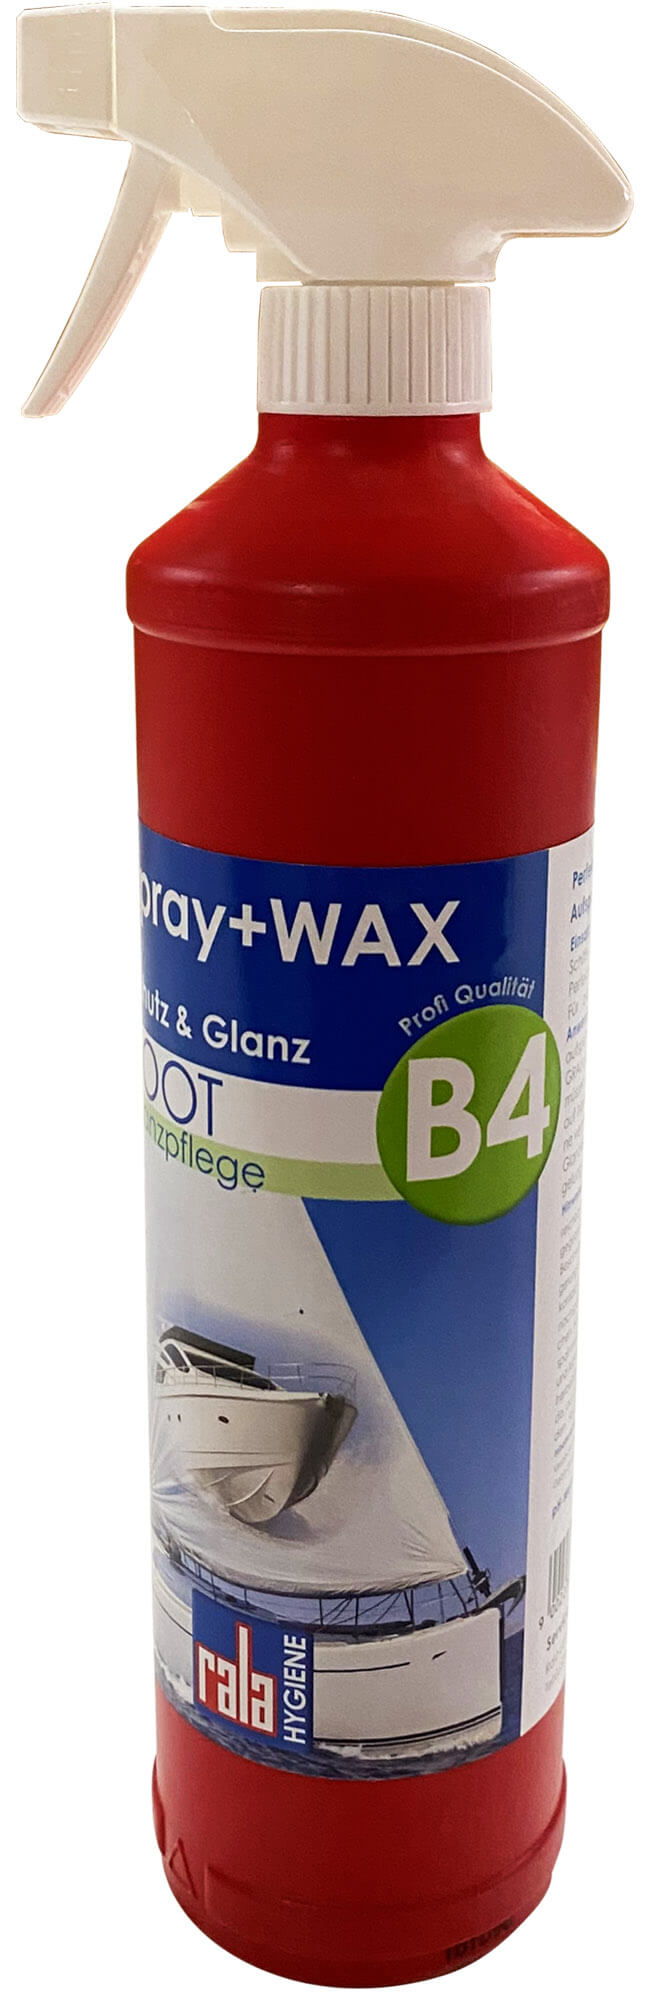 B4 Glanzpflege Spray + Wax